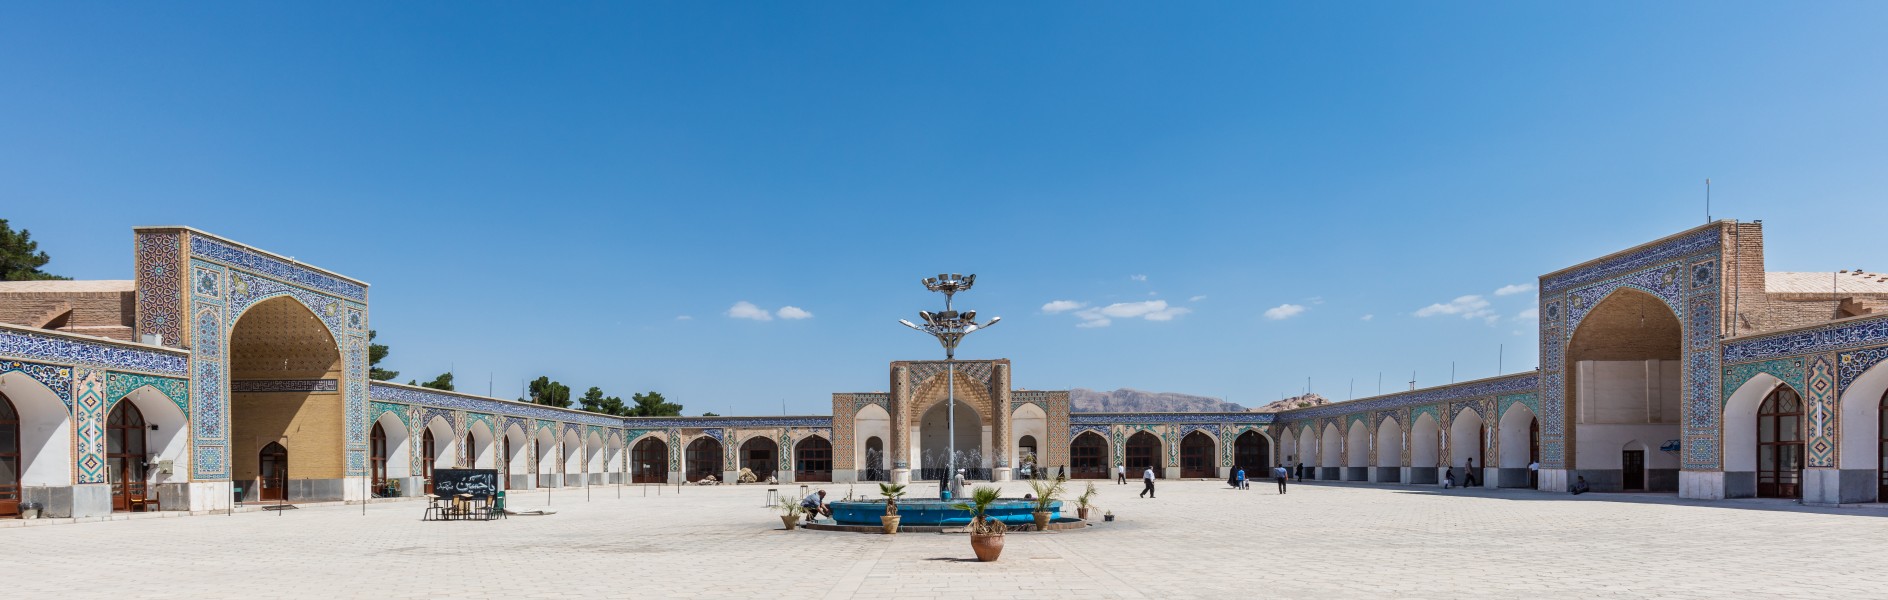 Mezquita de Malek, Kerman, Irán, 2016-09-22, DD 18